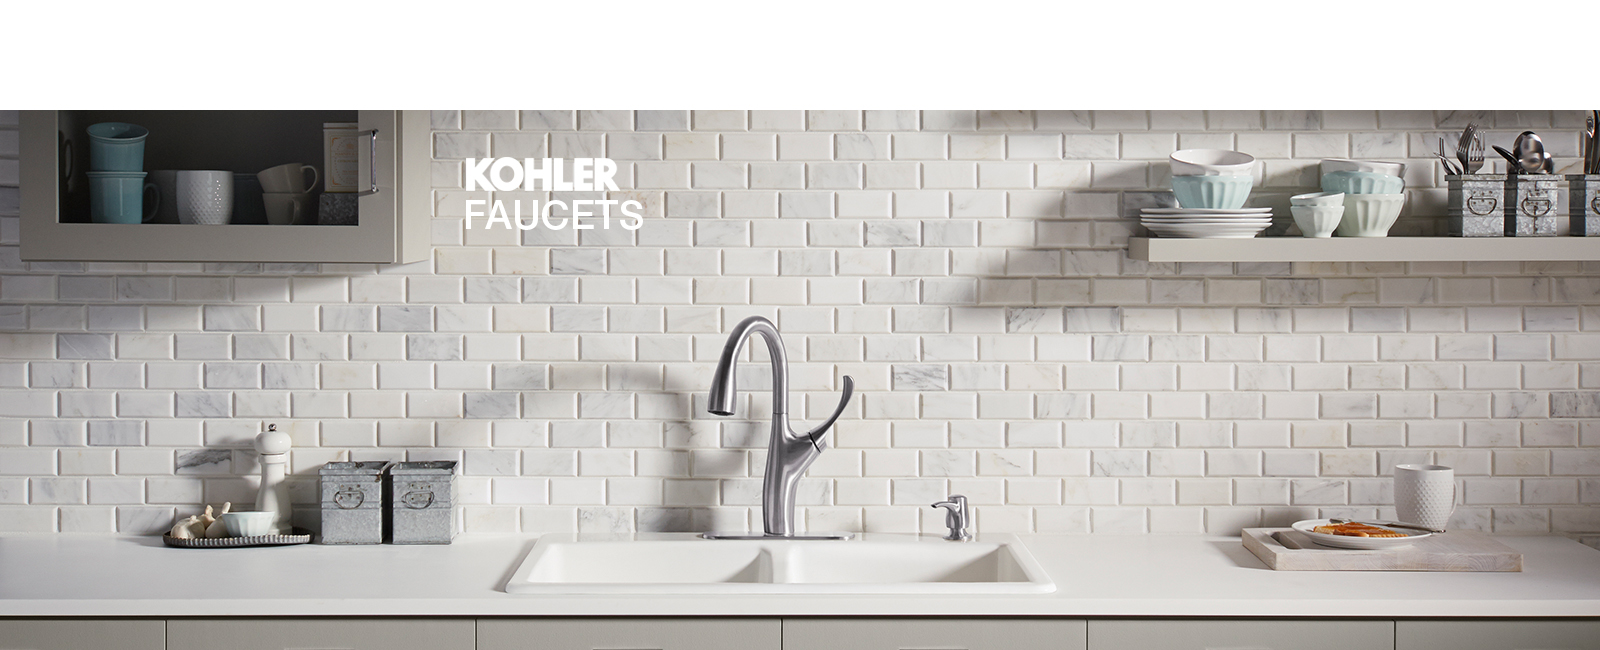 Kohler Faucets Designs - Kloop Studio